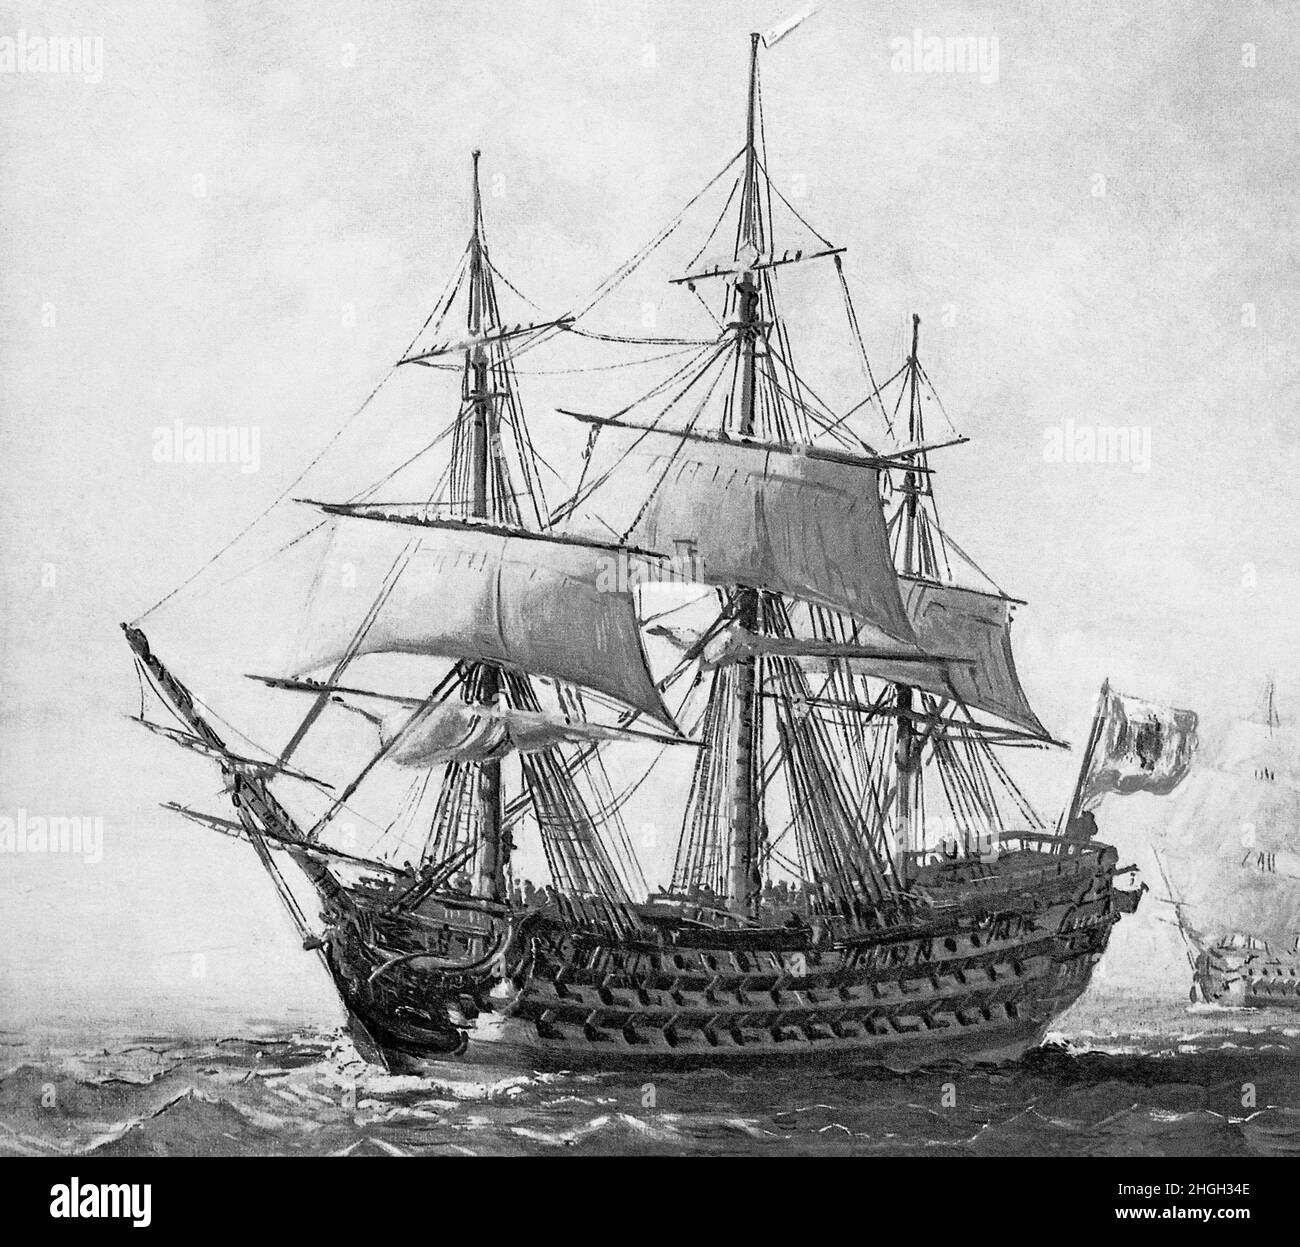 Illustration monochrome du navire espagnol de la ligne, 'son Hermenegildo', un navire à canon 112 lancé à la Havane, Cuba en 1789.Lors de la bataille de la baie d'Algeciras en juillet 1801, le navire a été détruit lorsque le Superb, un navire britannique, a tiré et frappé le San Hermenegildo.Un autre navire espagnol, le vrai Carlos a pris le feu et les deux navires espagnols se sont confondus avec des navires britanniques et ont commencé un duel furieux jusqu'à ce qu'une rafale soudaine de vent ramenait les deux navires ensemble et empêchés leur gréement.L'Hermenegildo a également pris feu et les deux navires ont explosé. Banque D'Images